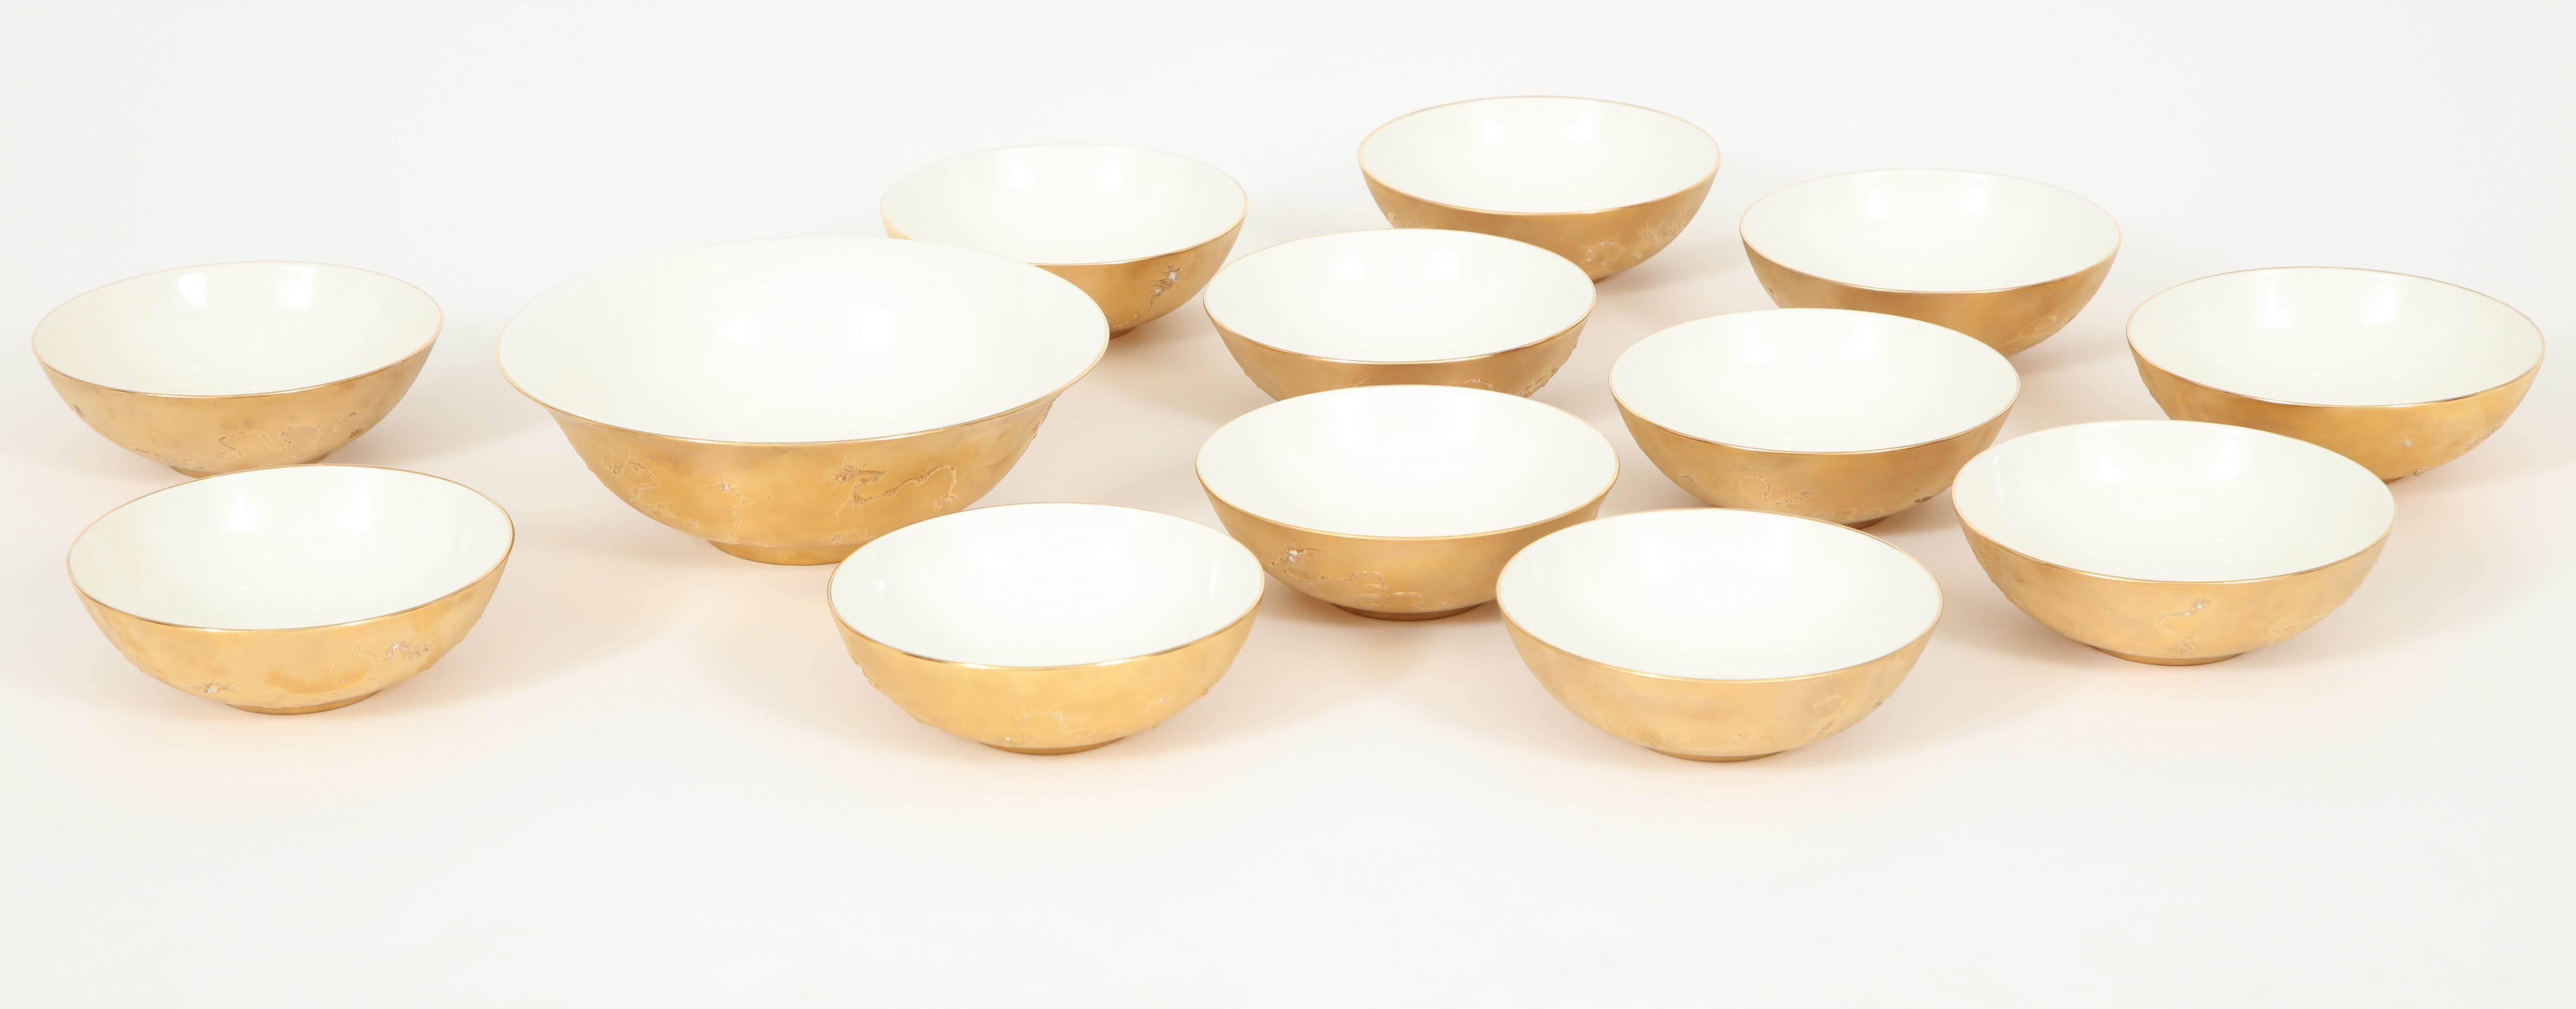 Ceramic Rare Set of 13 Bowls by Sascha Brastoff